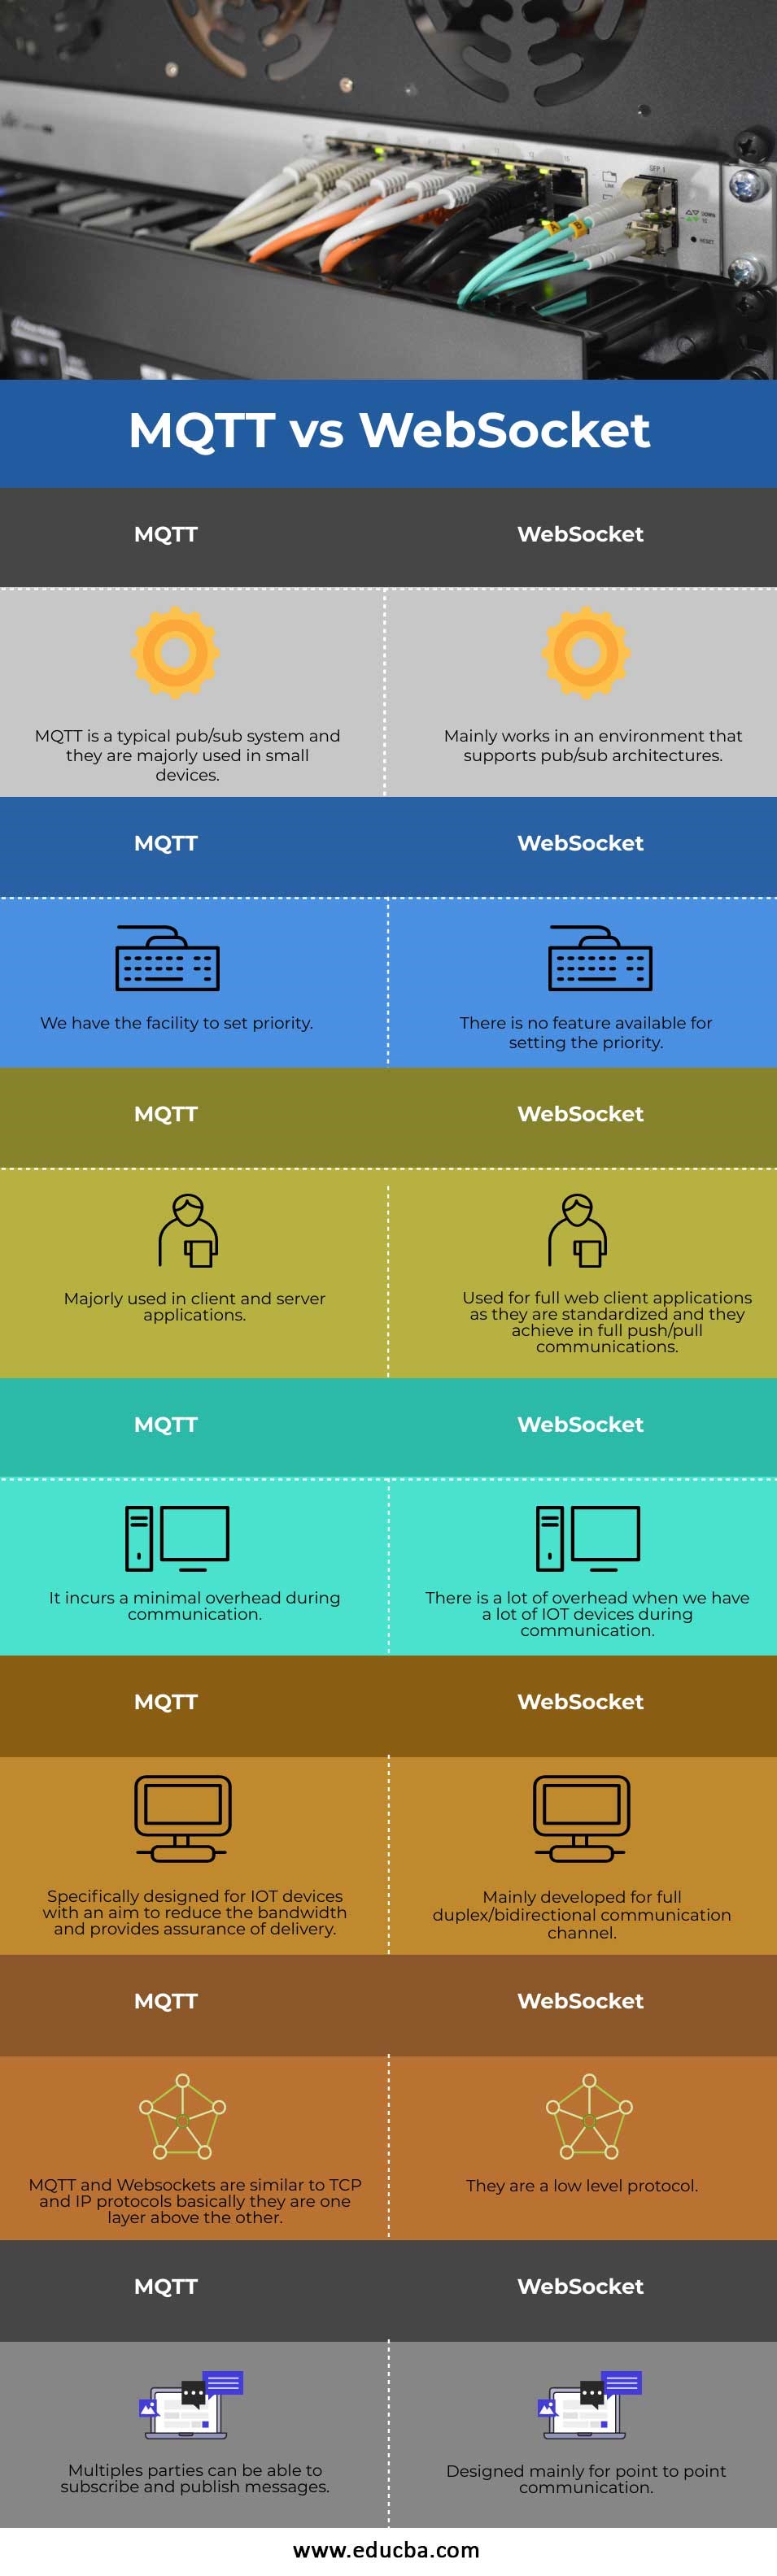 MQTT-vs-WebSocket-info